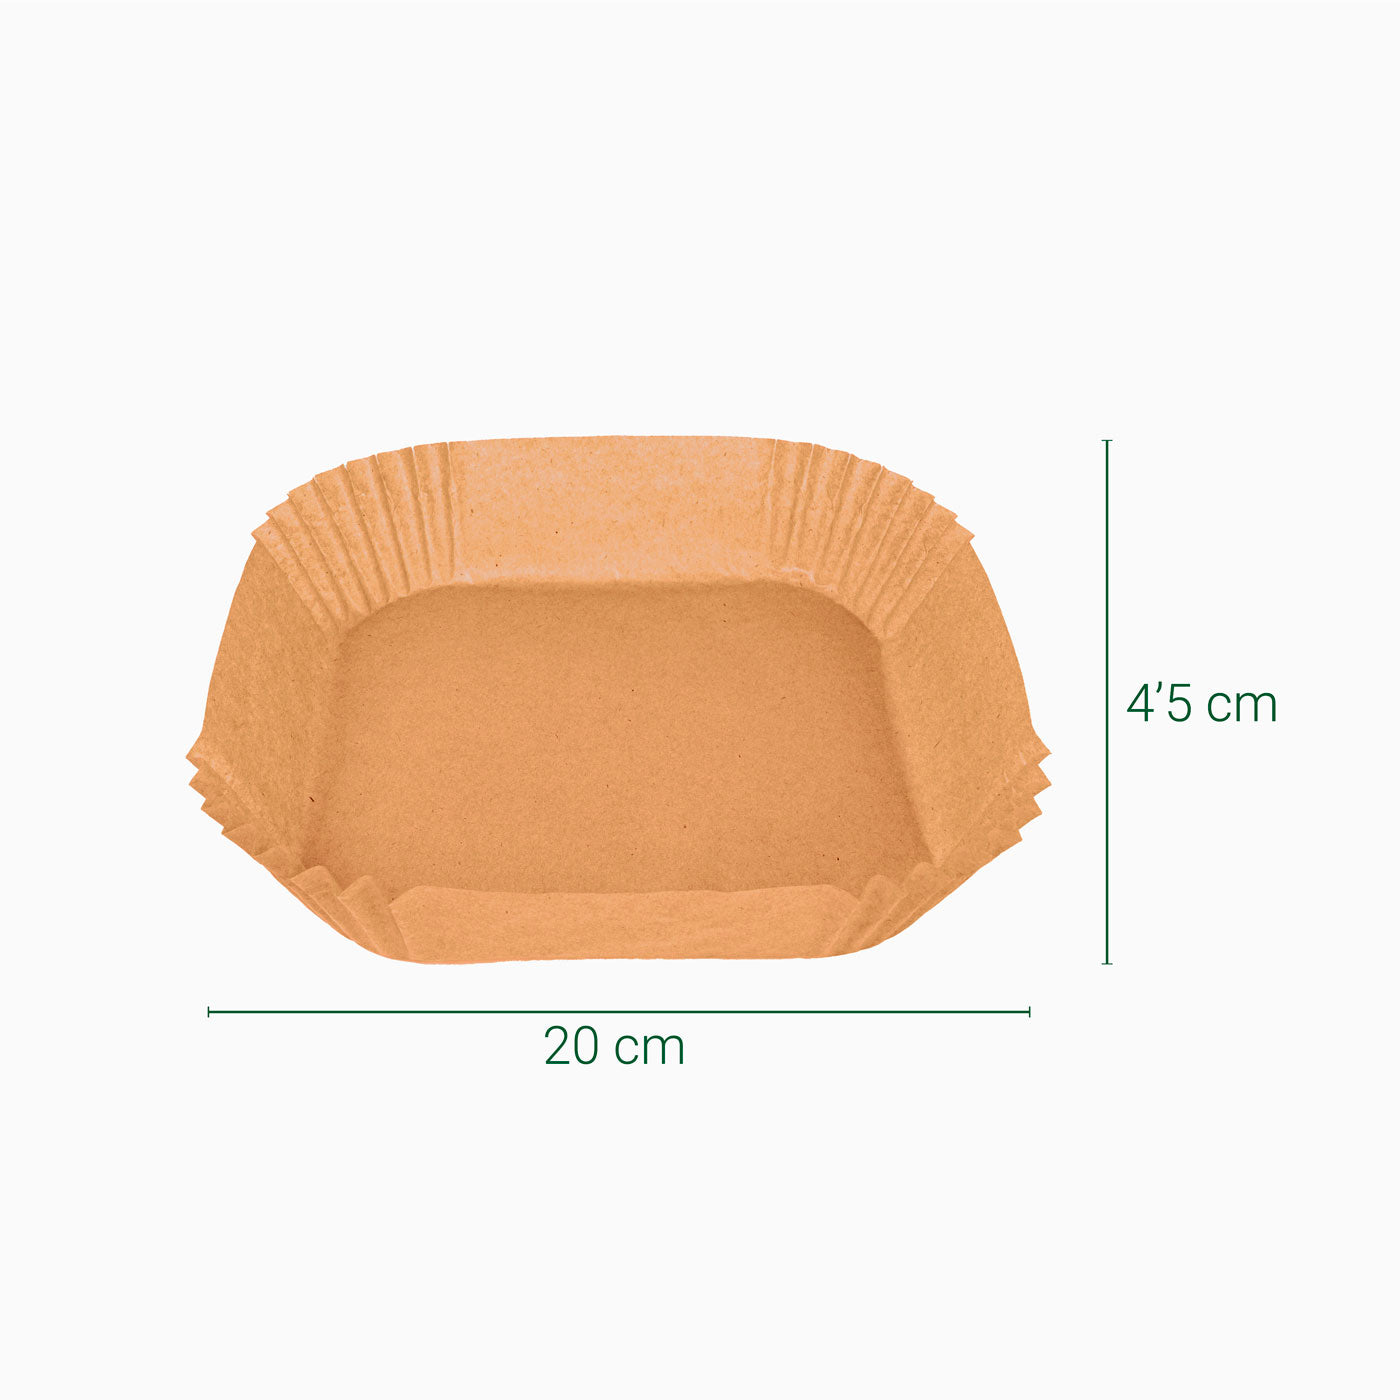 Molde de papel silicoado Airfryer 20 x 20 x 4,5 cm